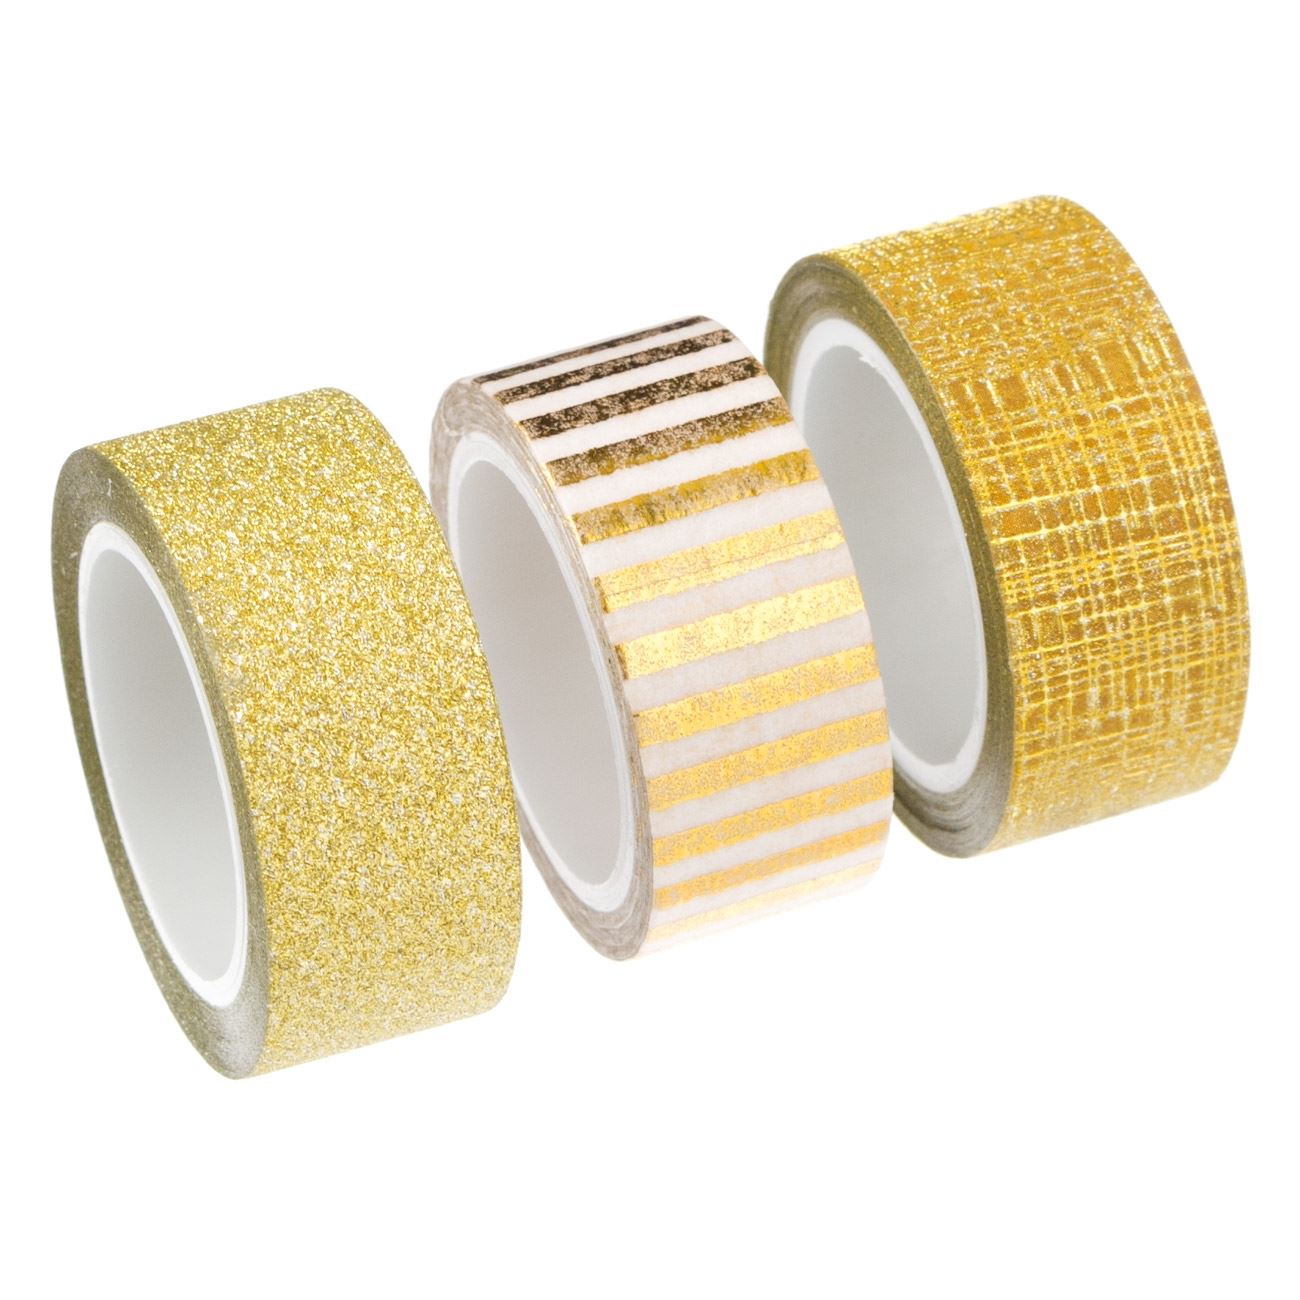 Csillogó kézműves papírszalag arany színek 5 m 1,5 cm - 3 db.